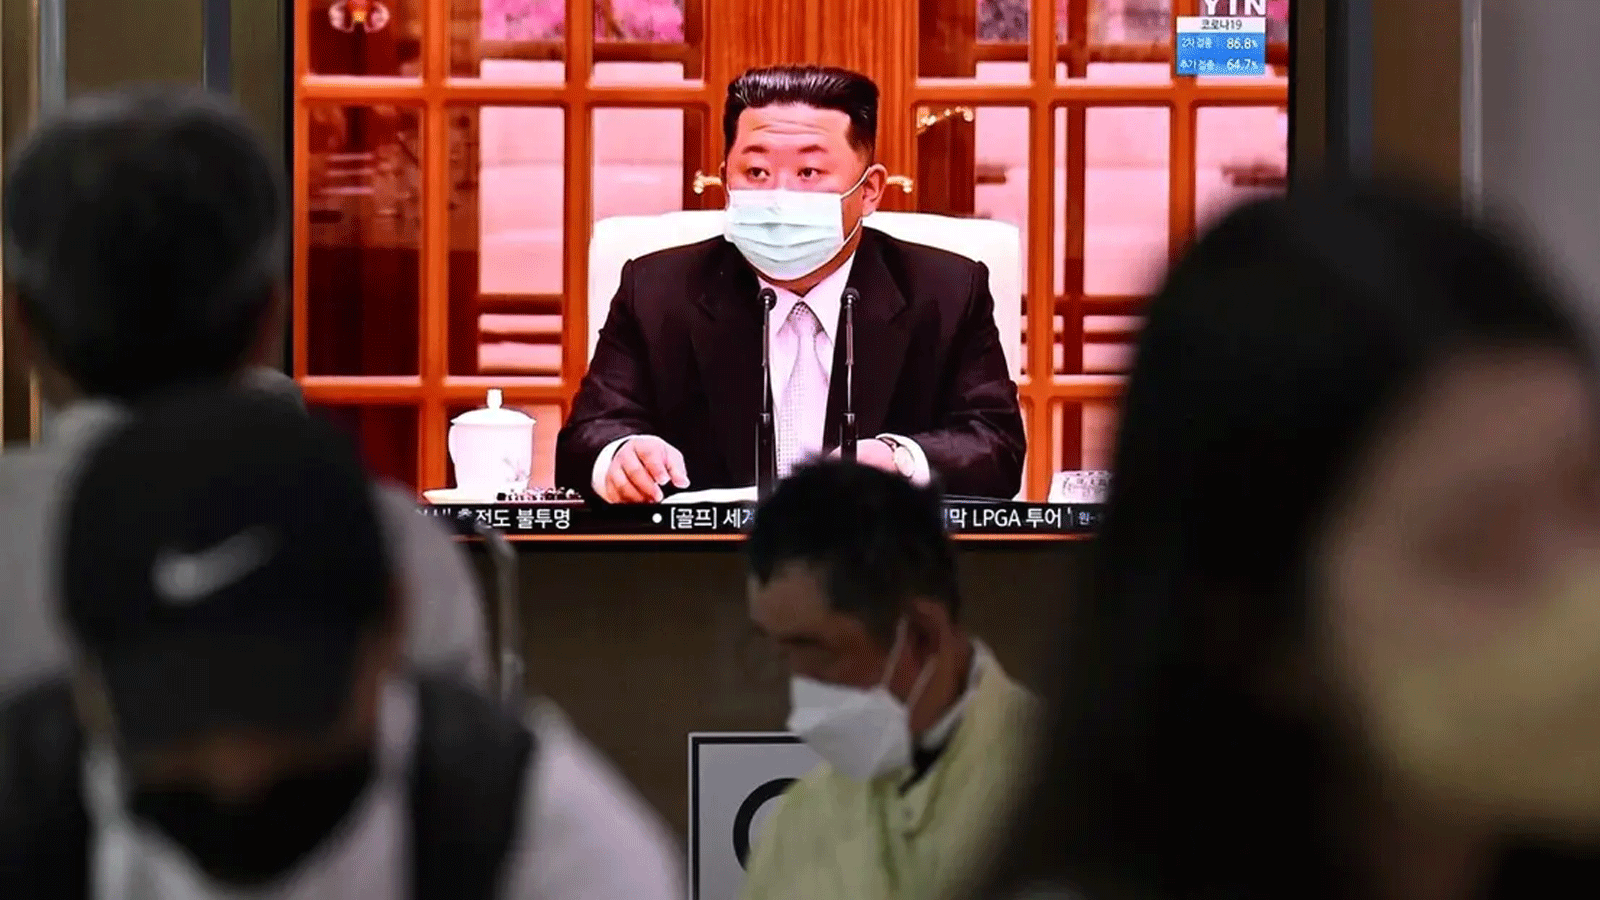 أشخاص يجلسون بالقرب من شاشة تعرض نشرة إخبارية في محطة قطار في سيول في 12 أيار\مايو 2022. زعيم كوريا الشمالية كيم جونغ أون يظهر مرتديًا قناع وجه على شاشة التلفزيون لأول مرة، ليأمر بإغلاق جميع أنحاء البلاد